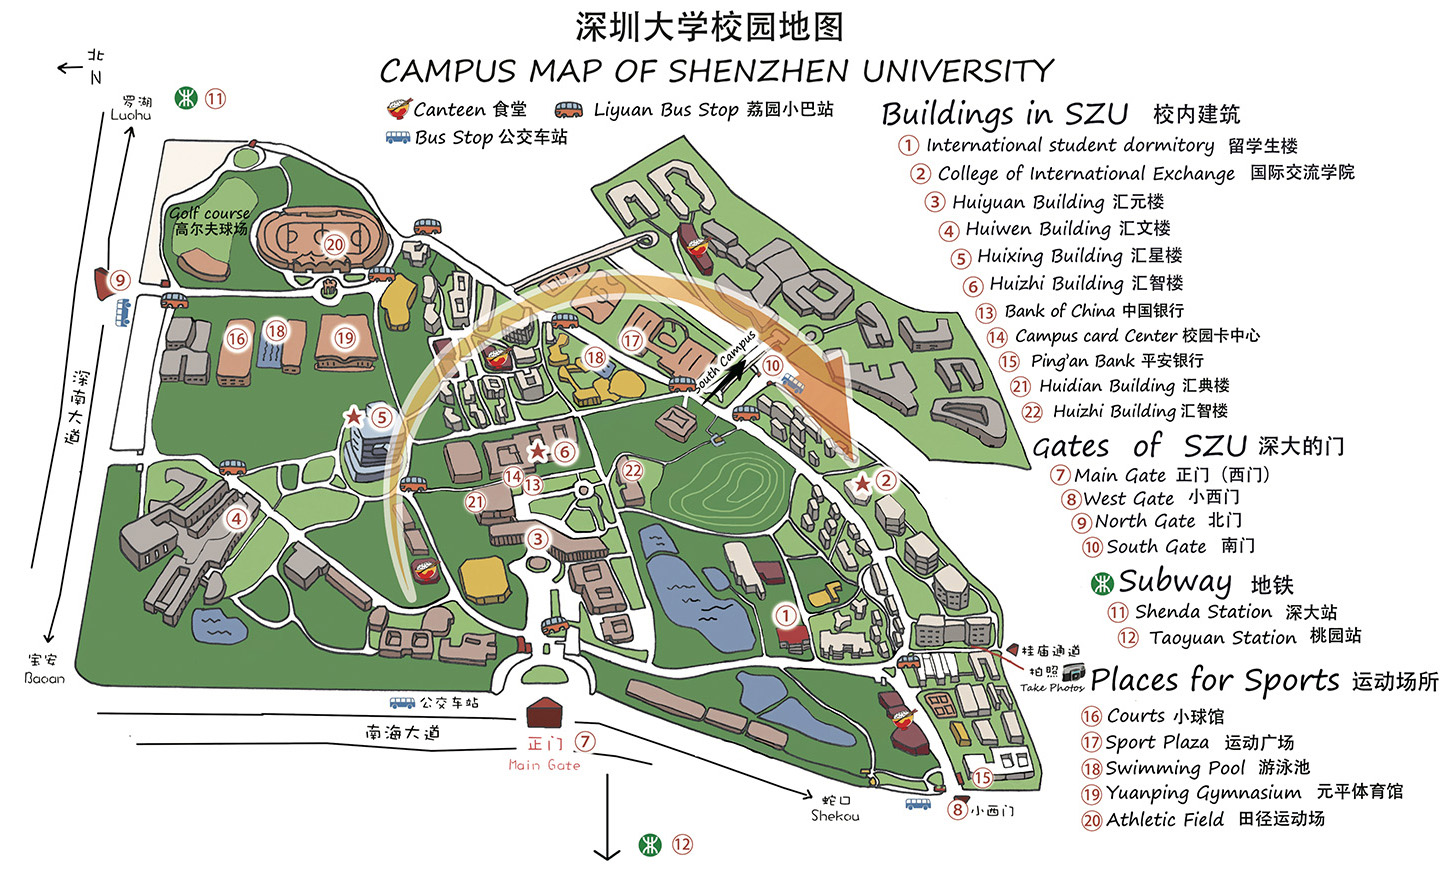 Shenzhen University campus map